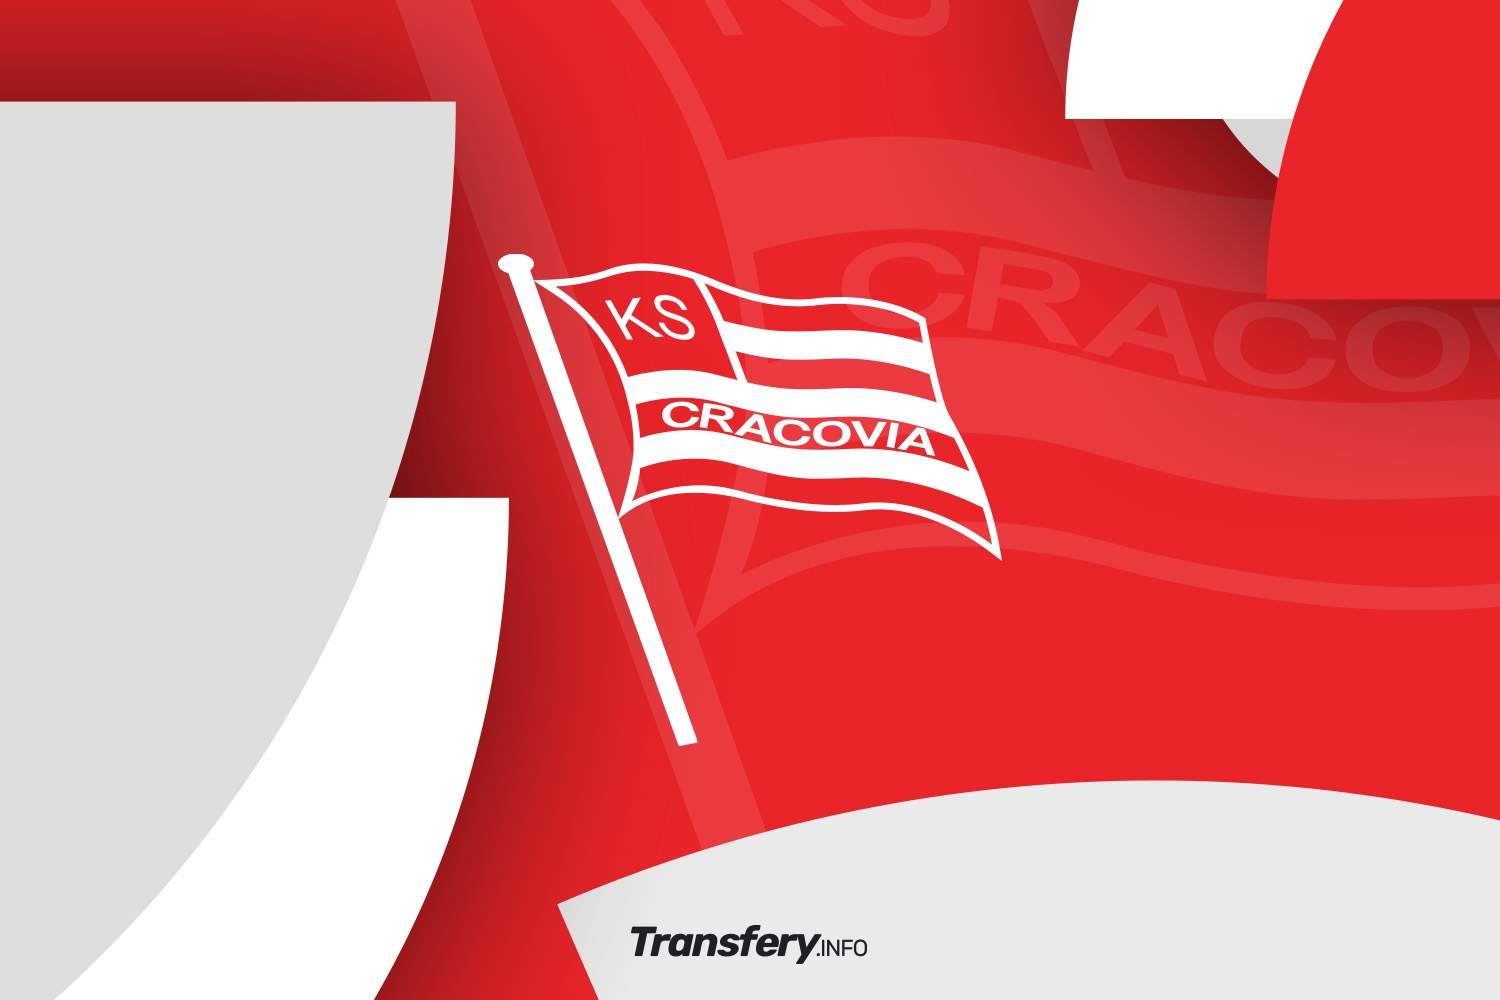 OFICJALNIE: Cracovia wypożyczyła wychowanka do zespołu III ligi